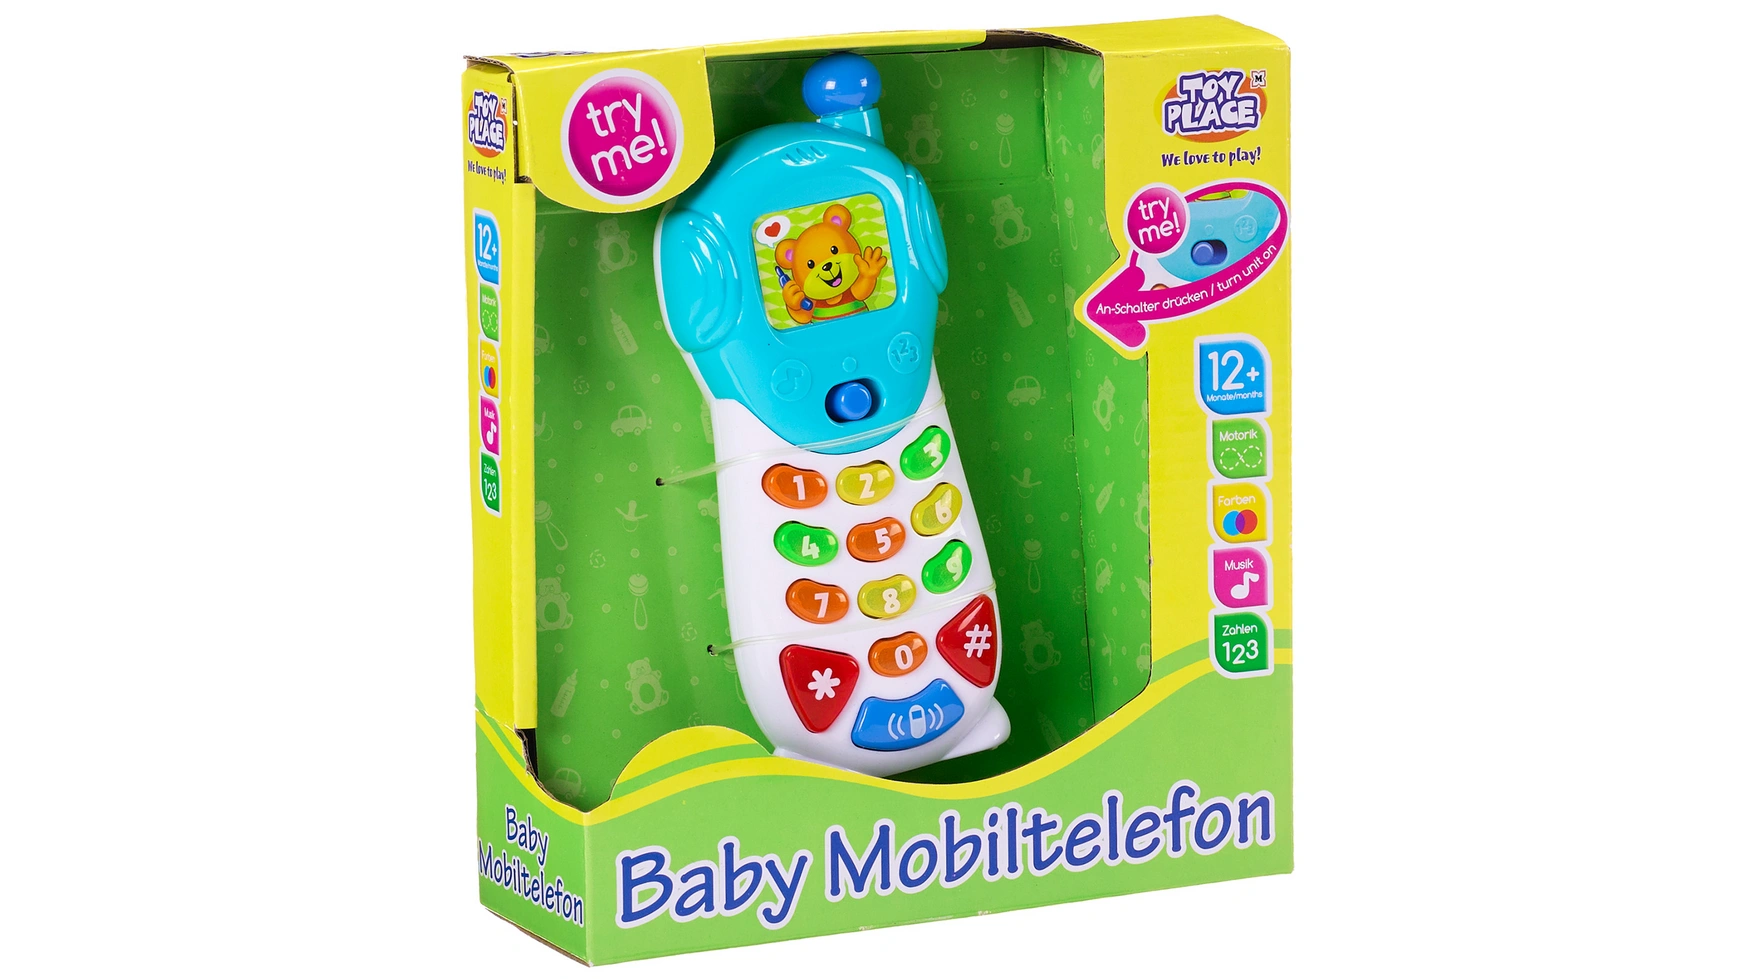 цена Müller Toy Place Детский мобильный телефон